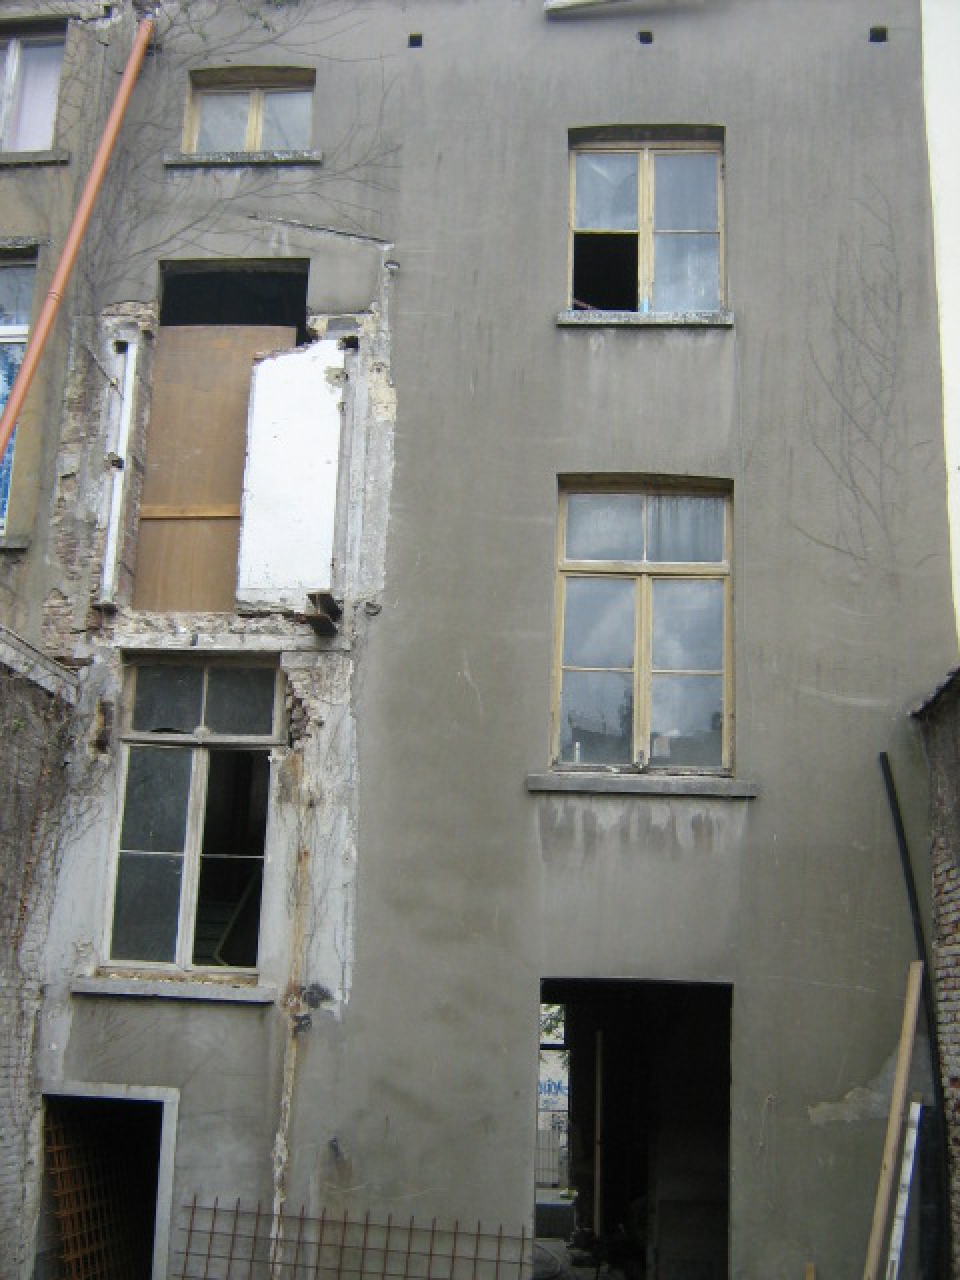 Renovatievan een flatgebouw